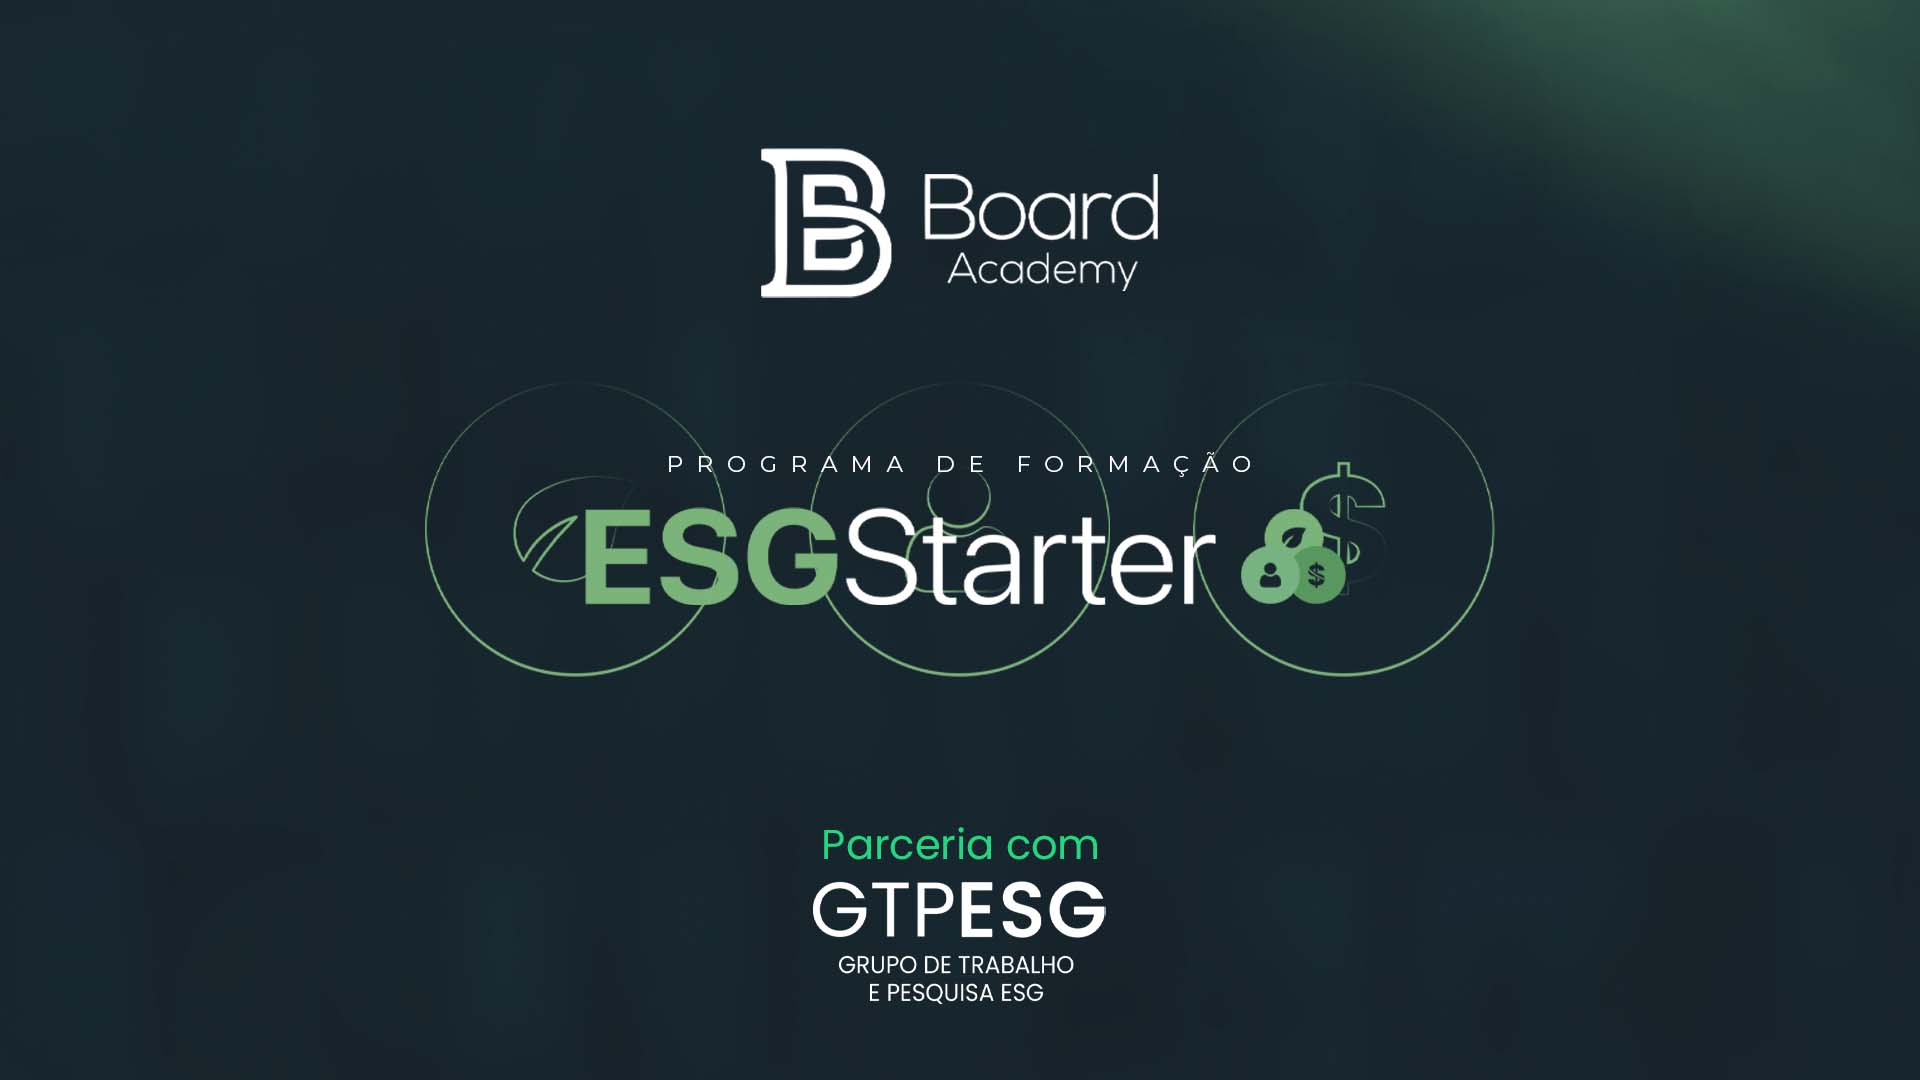 GTP-ESG agora é parceiro da Board Academy!